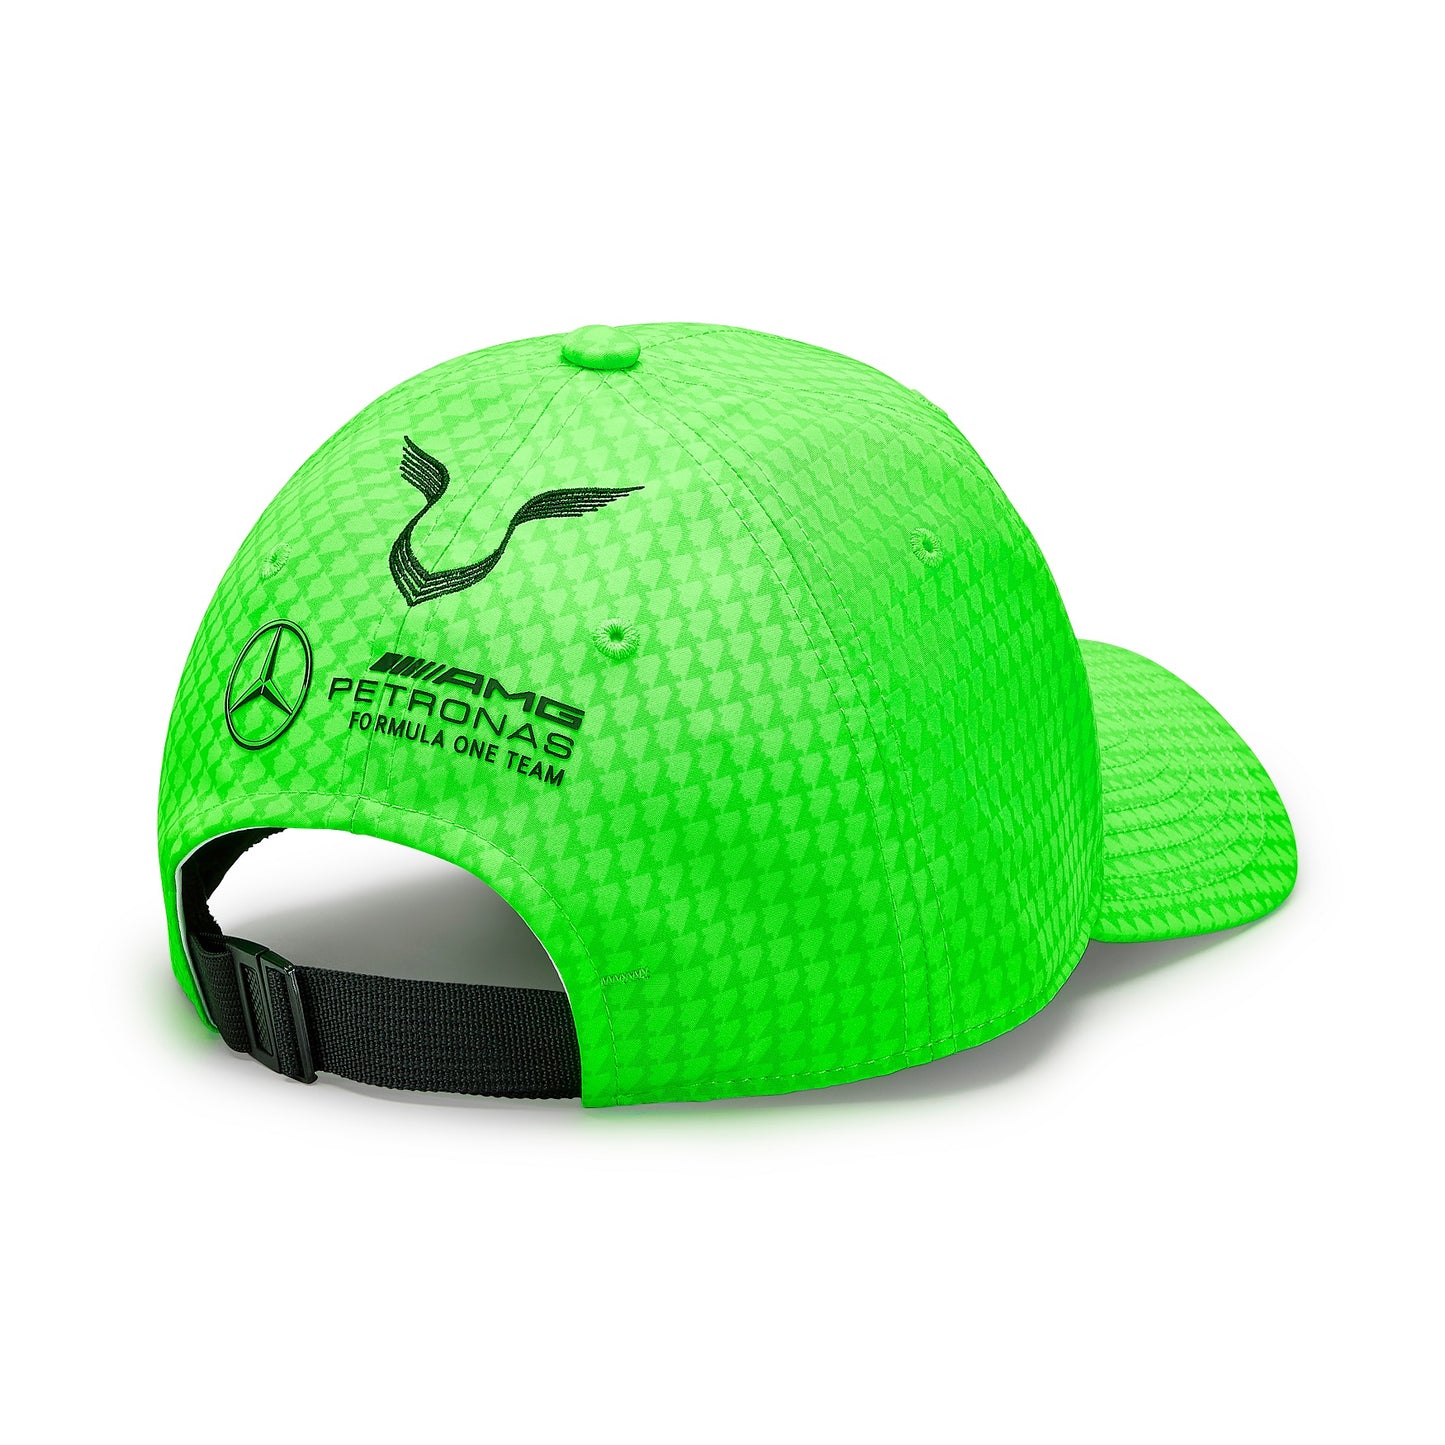 Mercedes Hamilton Team Baseball Cap Neon Green